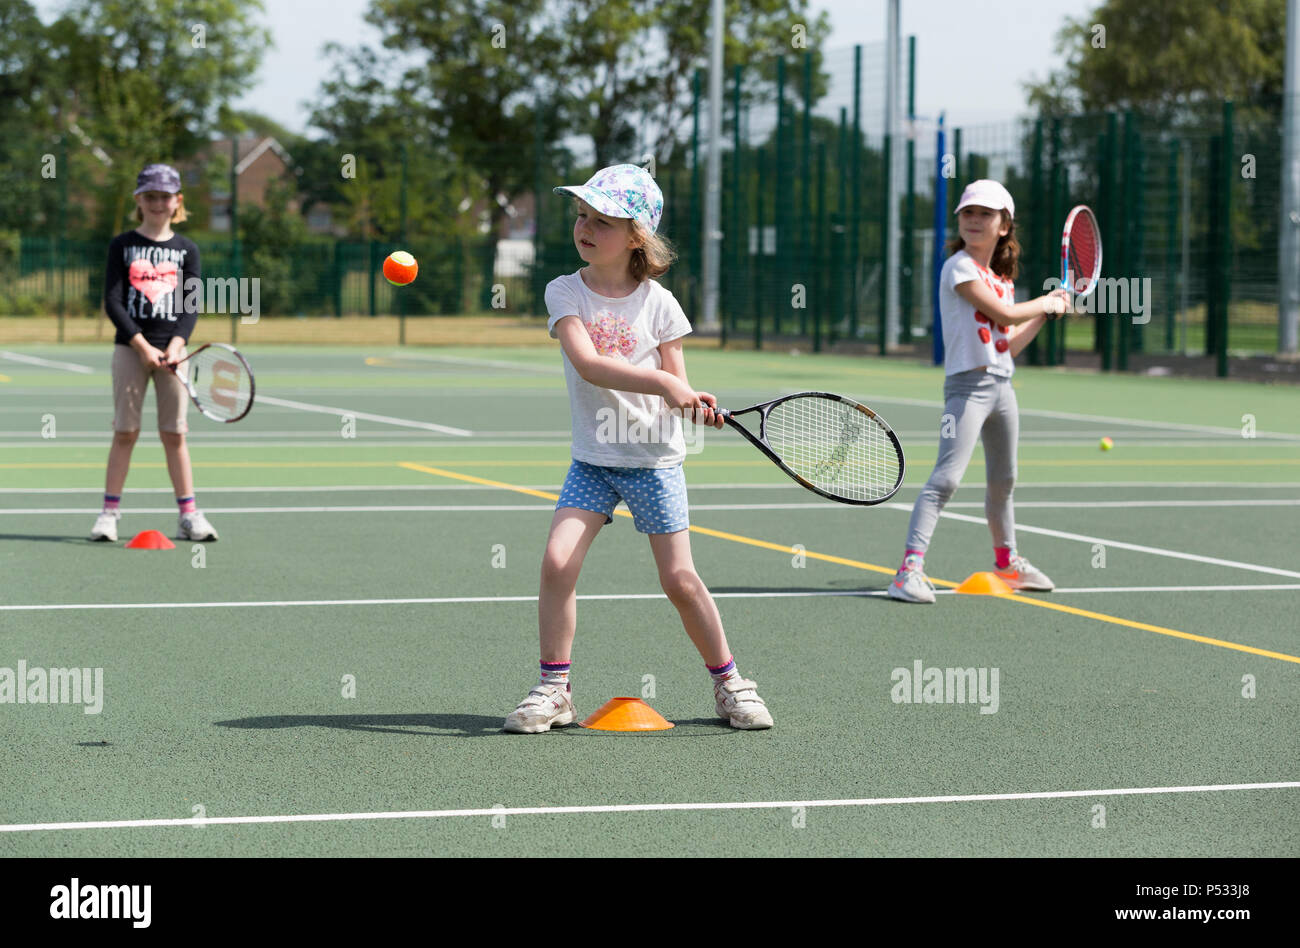 Tennis per bambini la sessione di coaching / lezione che si svolge su una full-size campo da tennis con i bambini / bambini e professional tennis pullman, in estate. Regno Unito. (99) Foto Stock